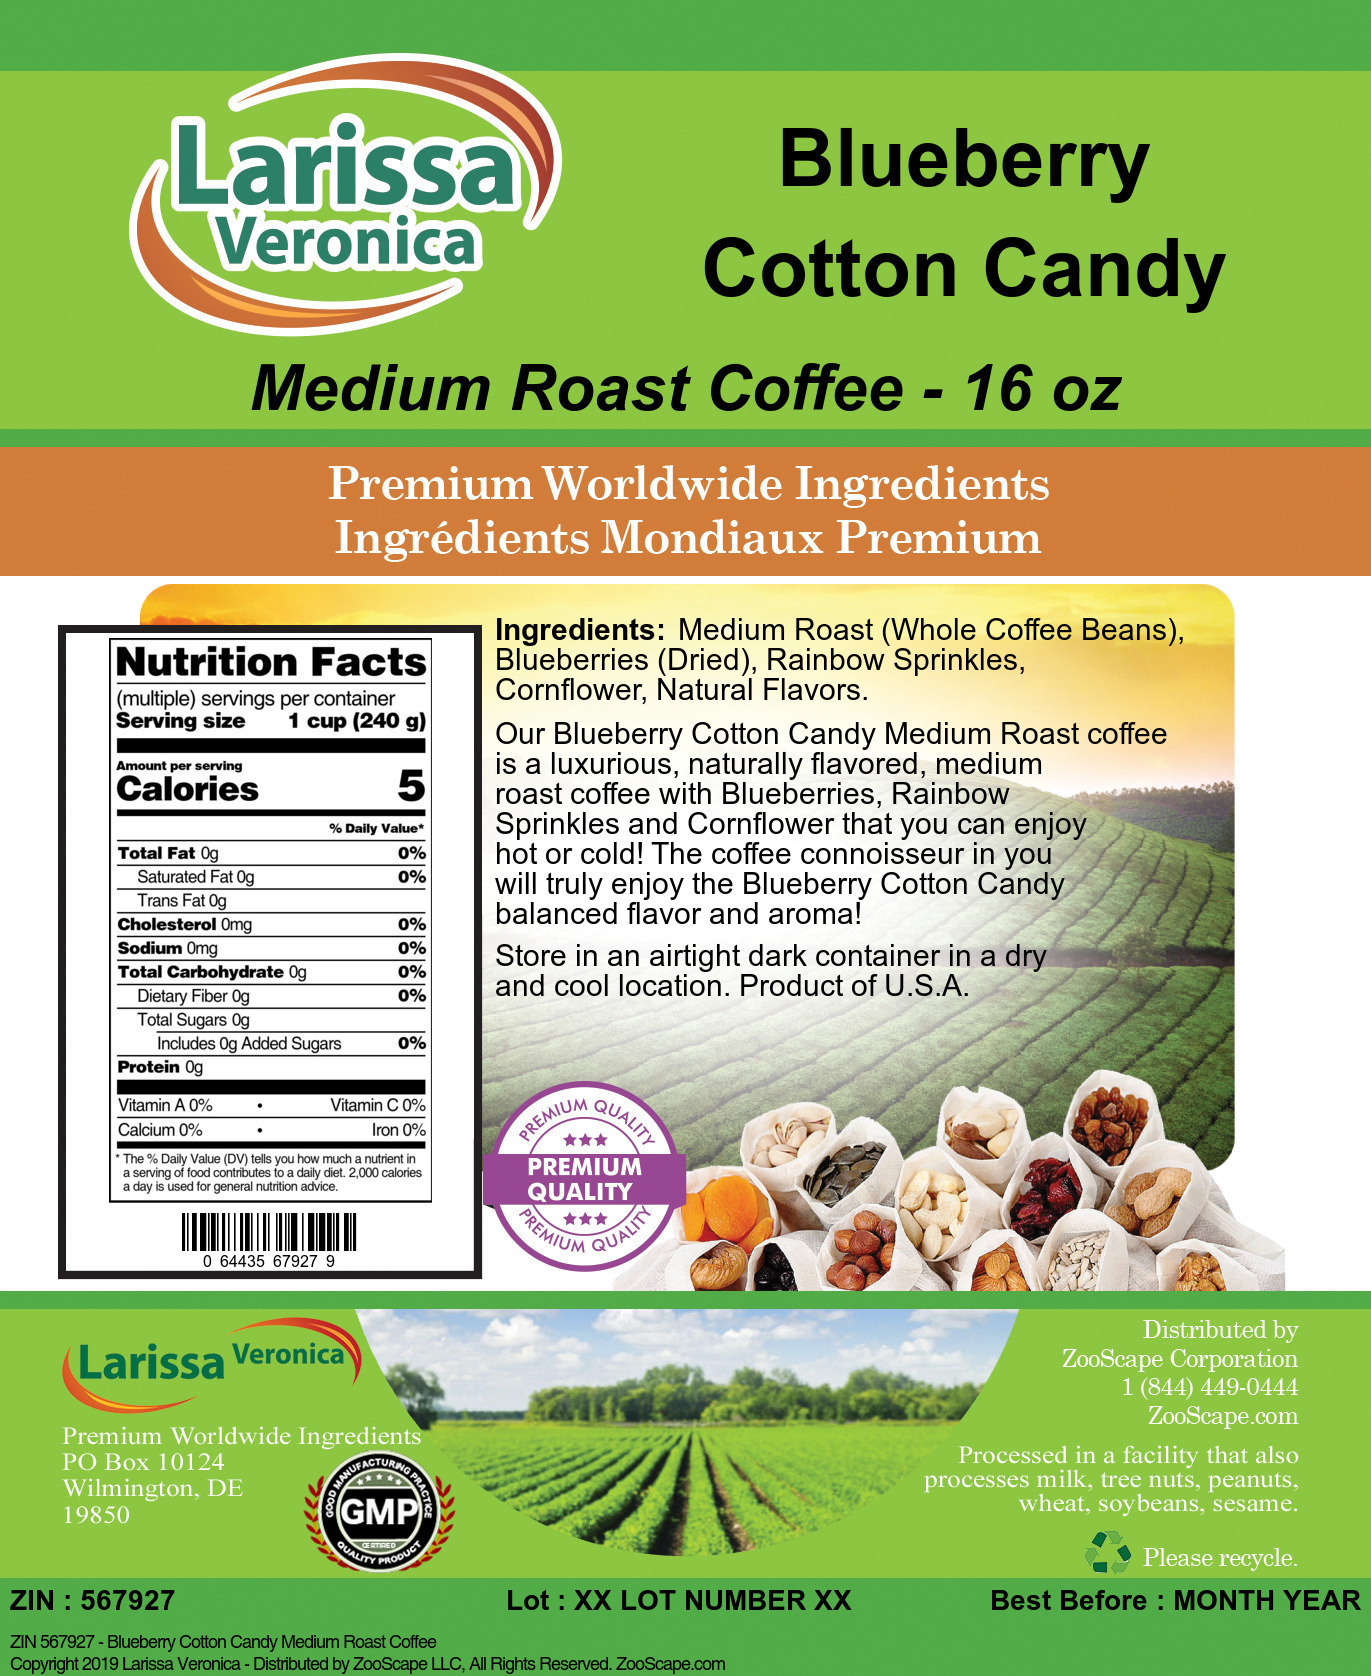 Blueberry Cotton Candy Medium Roast Coffee - Label